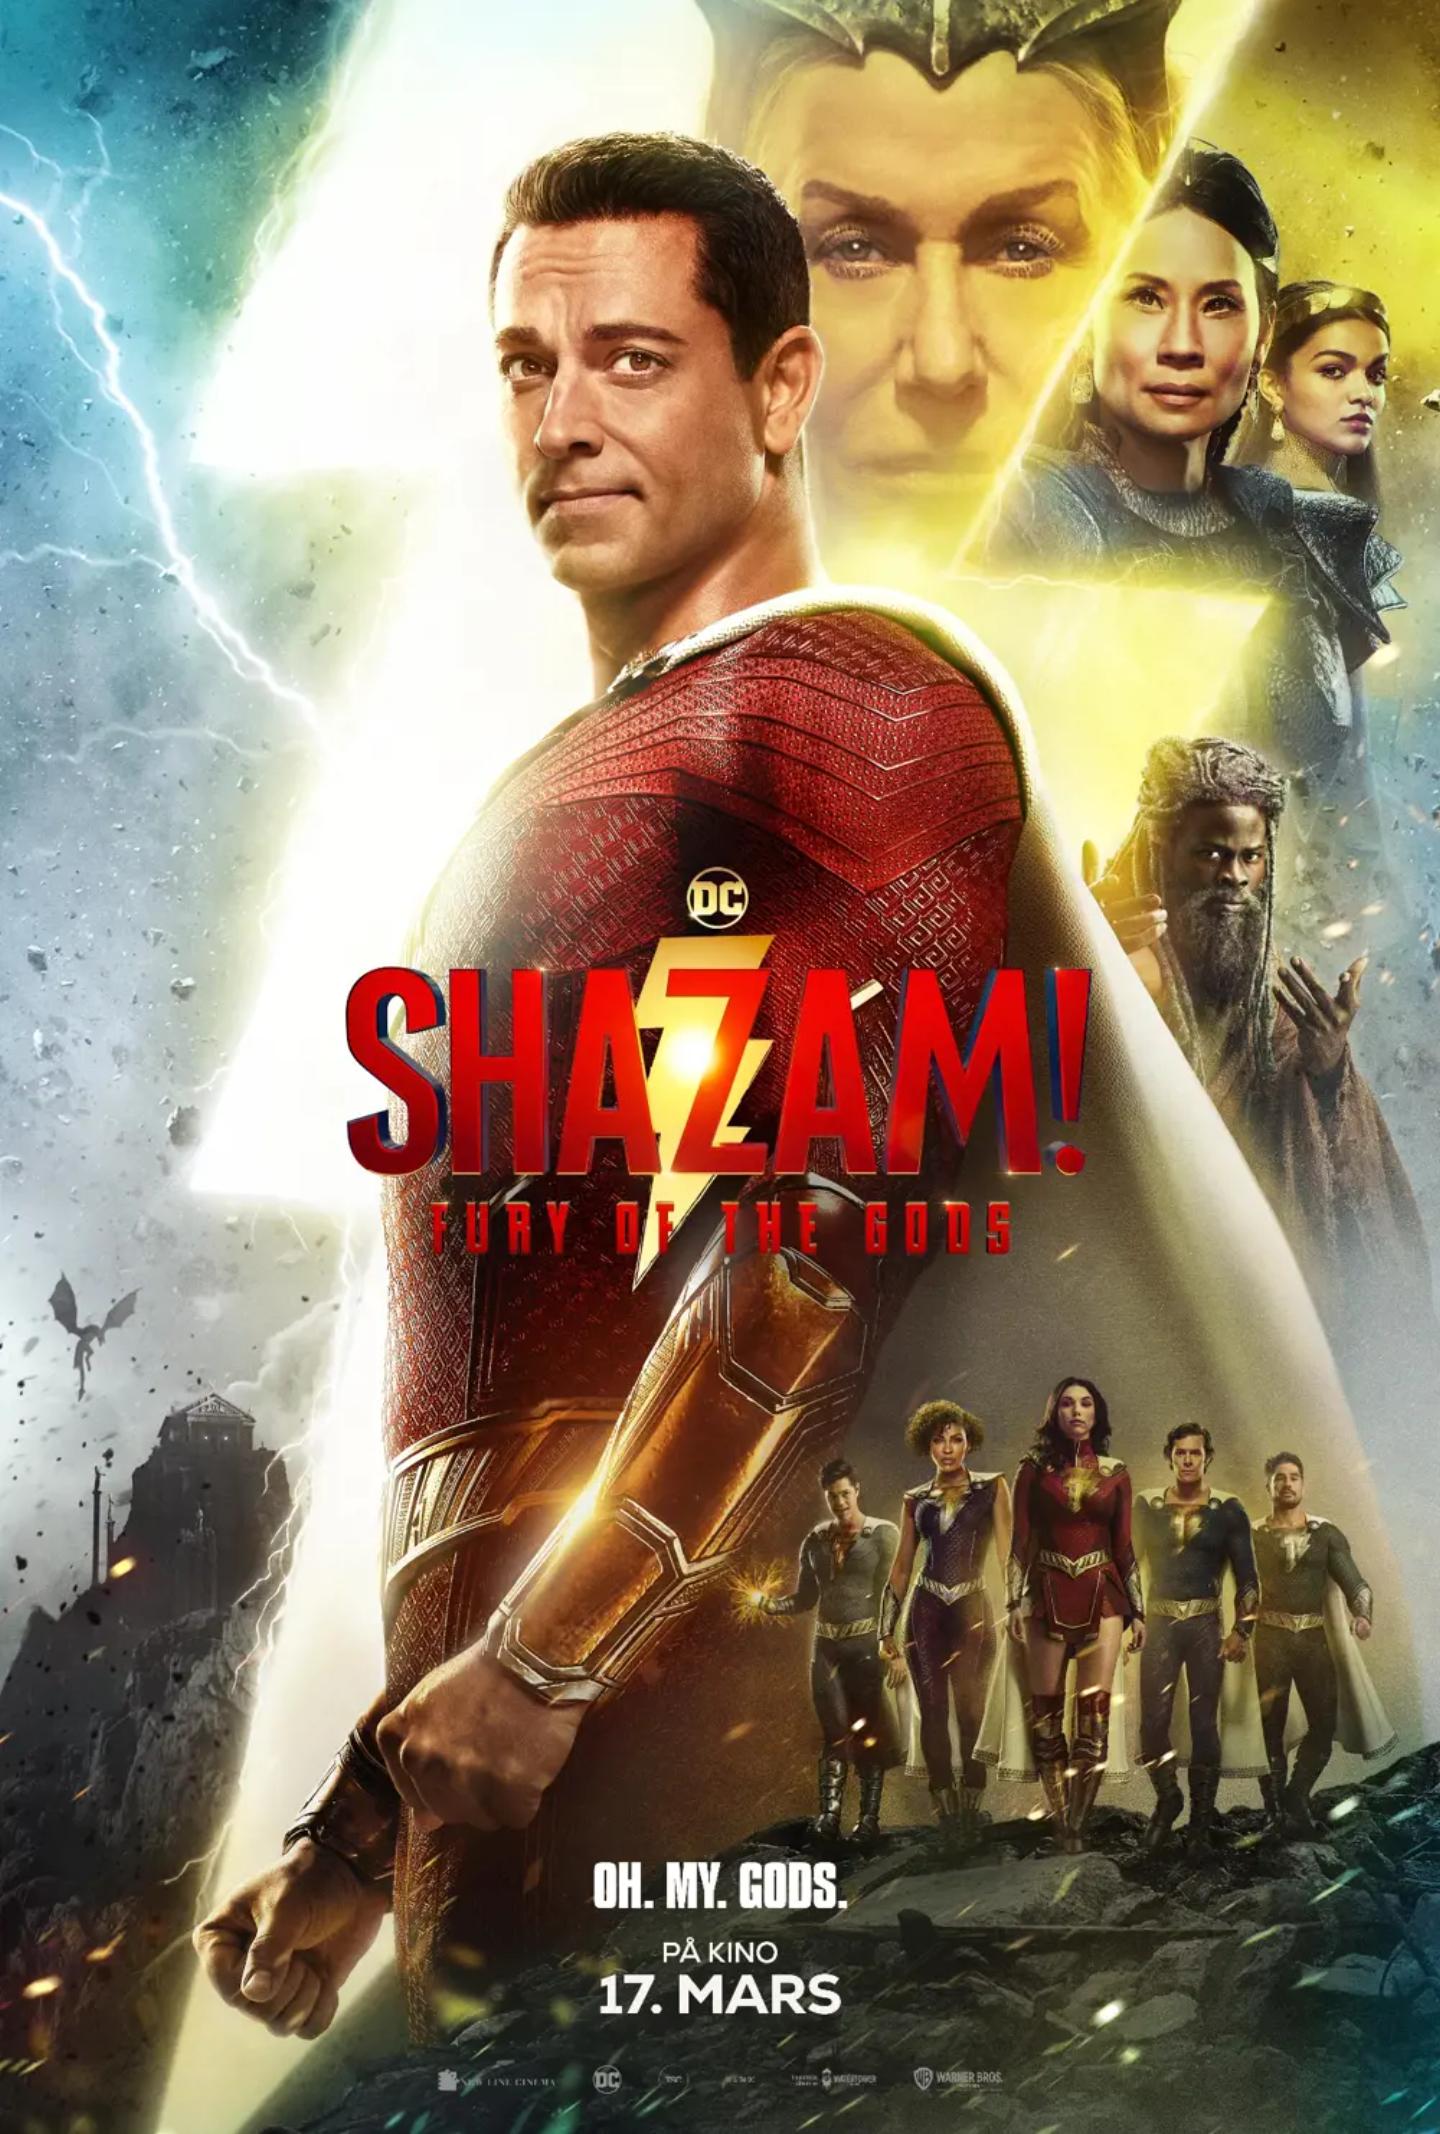 Plakat for 'Shazam! Fury of the Gods'